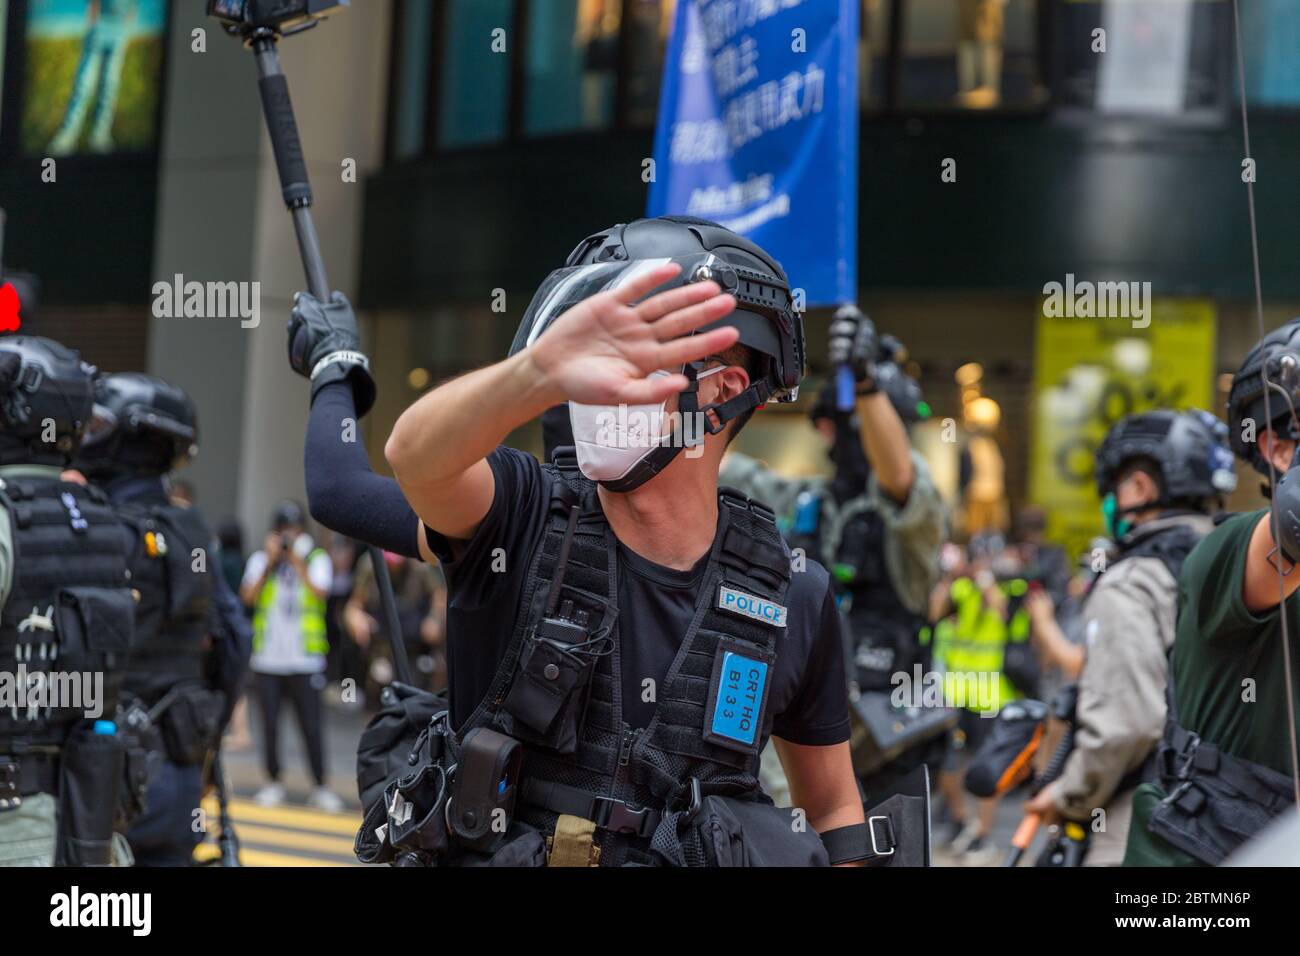 Central, Hong Kong. 27 May, 2020 Hong Kong Protest Anti-National Anthem Law. Credit: David Ogg / Alamy Live News Stock Photo